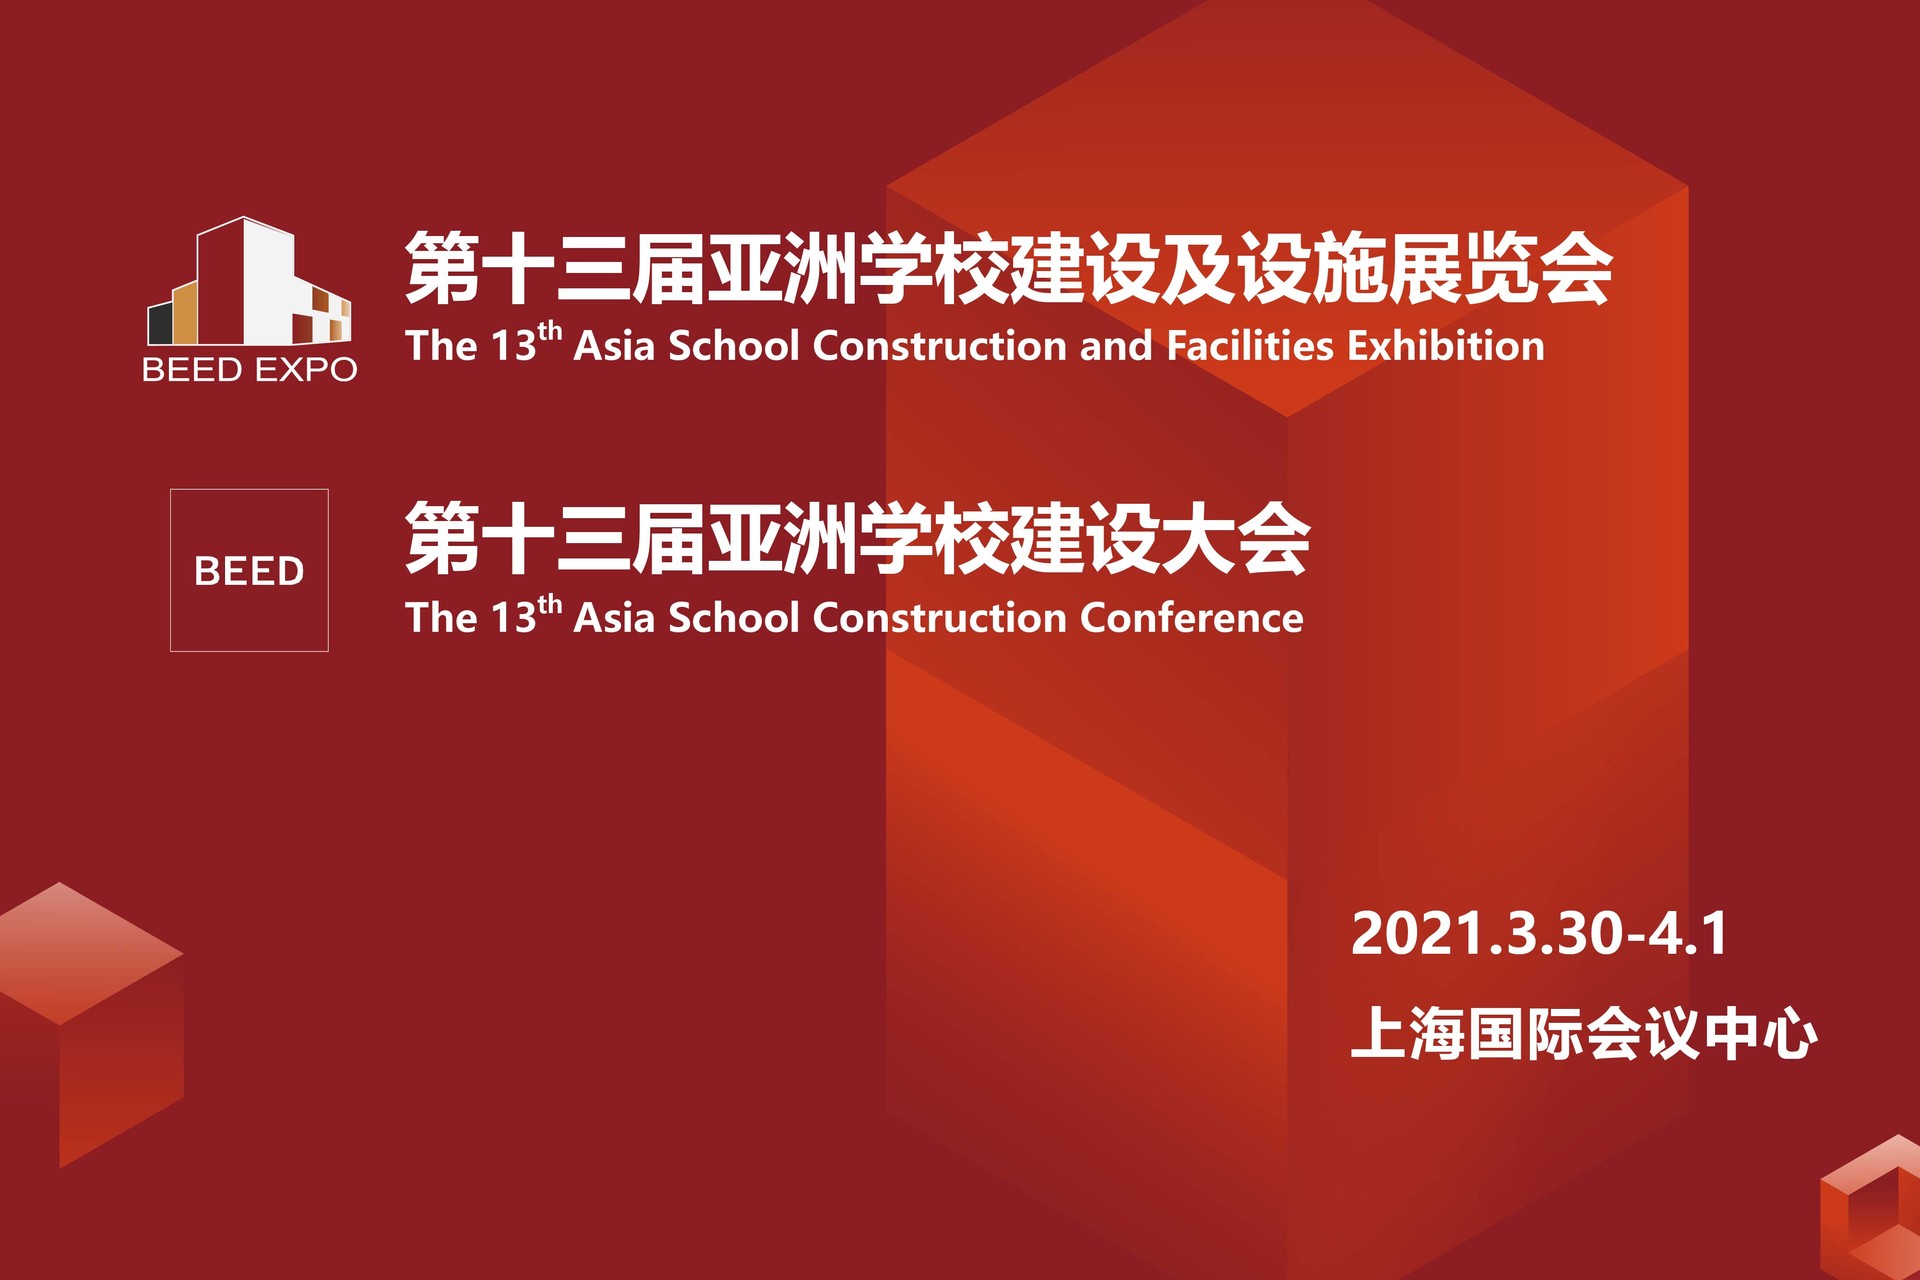 第十三届亚洲学校建设及设施展览会、第十三届亚洲学校建设大会